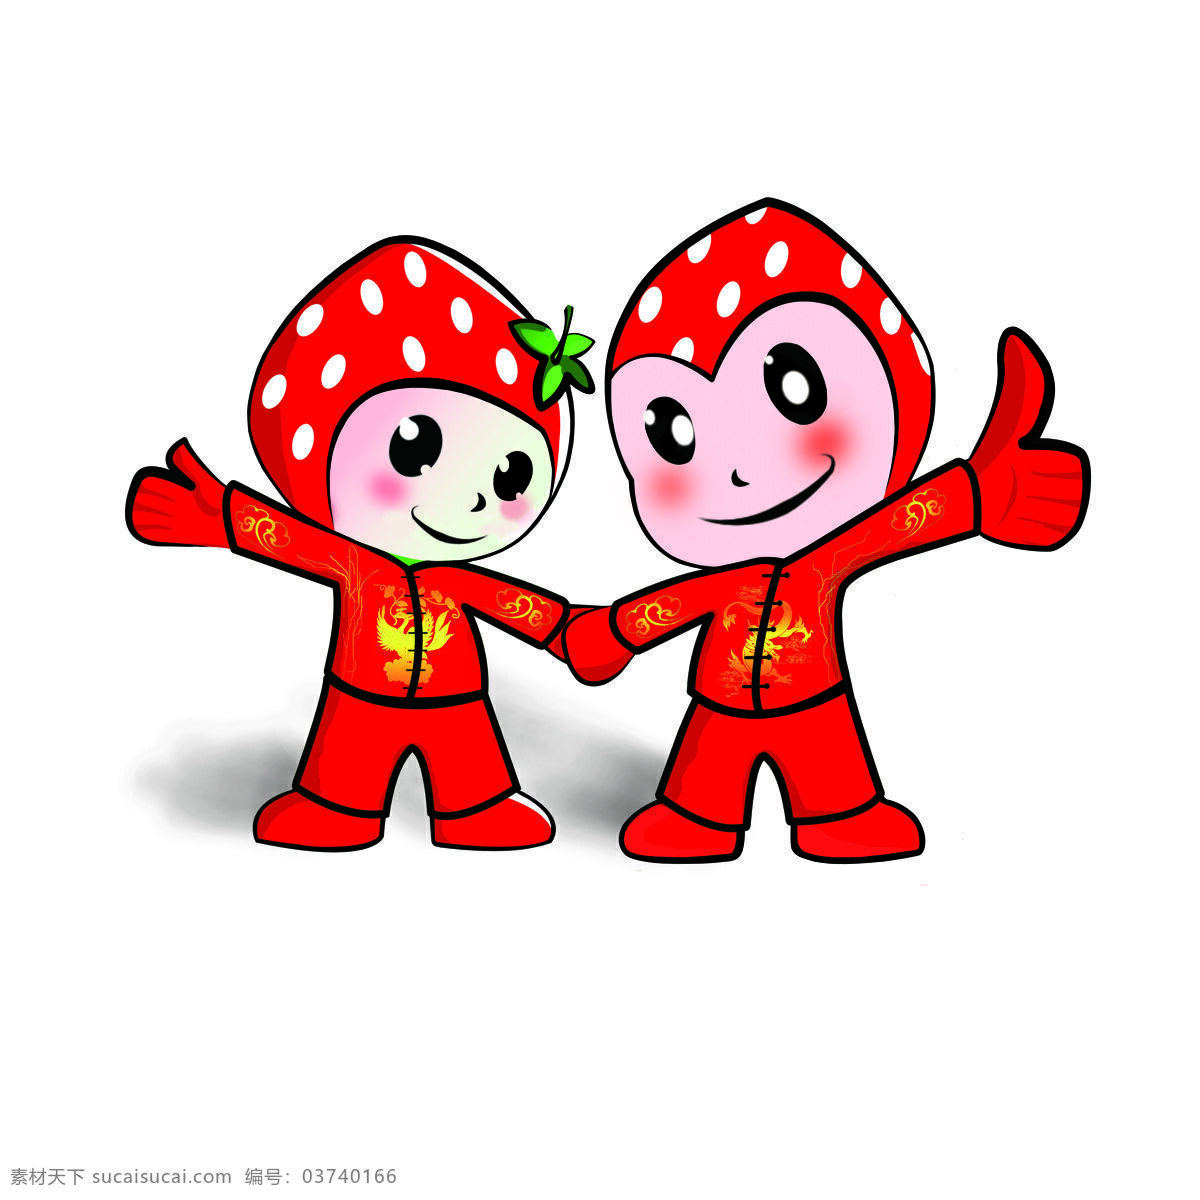 草莓公仔 草莓 草莓娃娃 草莓卡通 卡通草莓 卡通 水果 卡通水果 动漫动画 白色